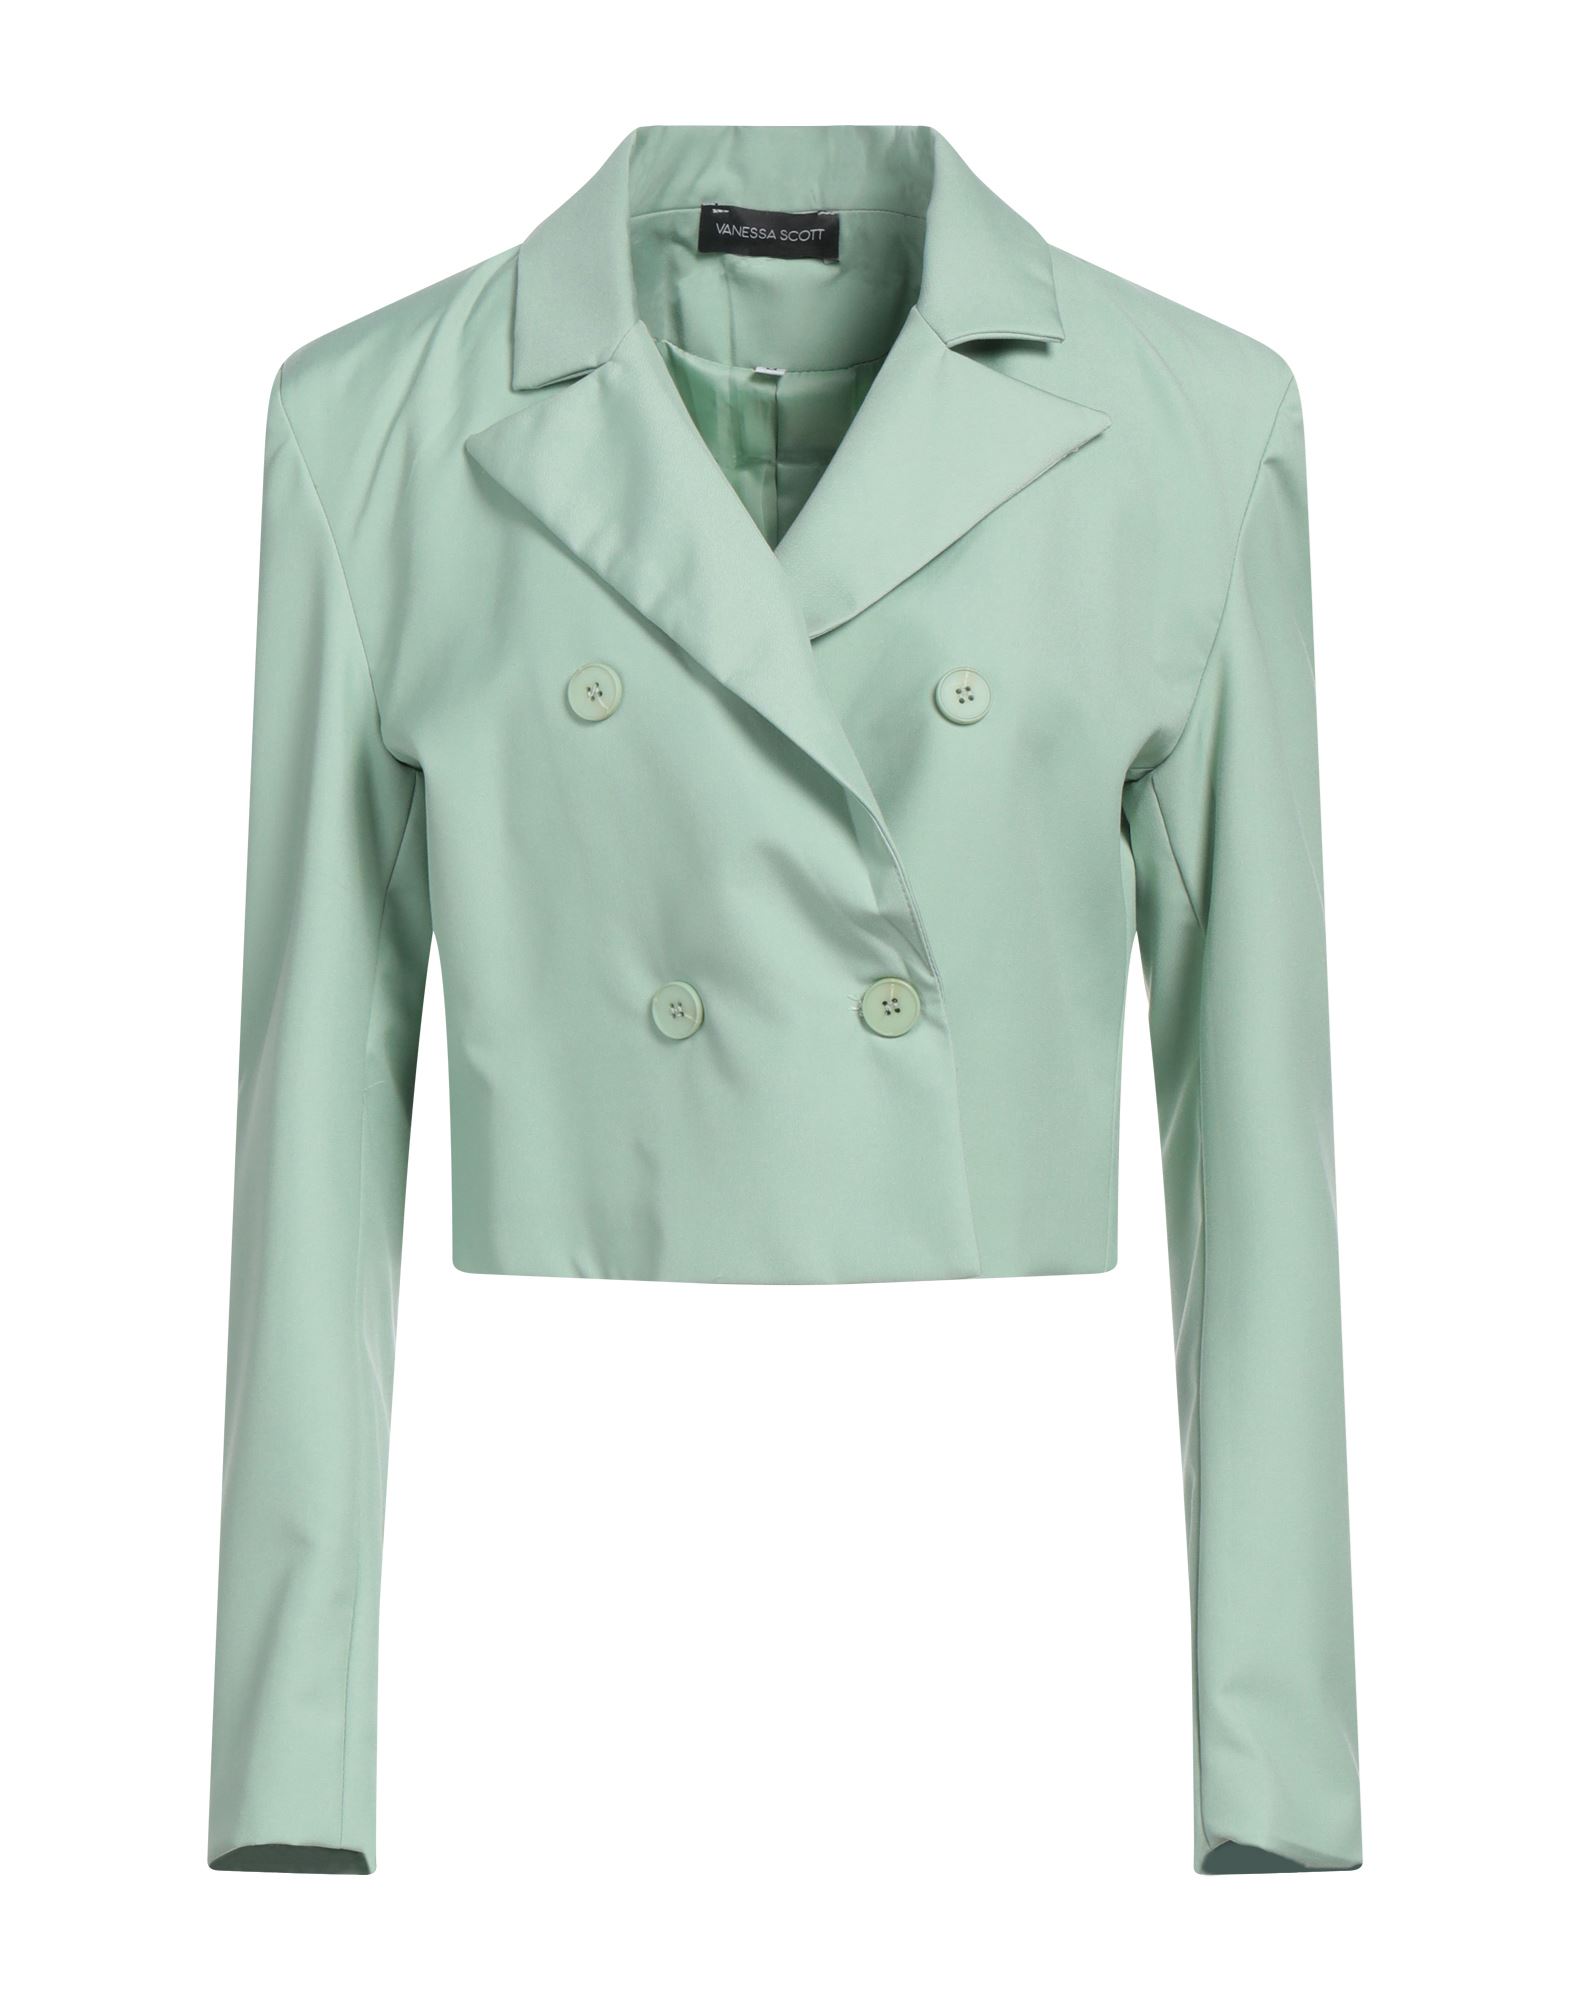 Vanessa Scott Suit Jackets In Green